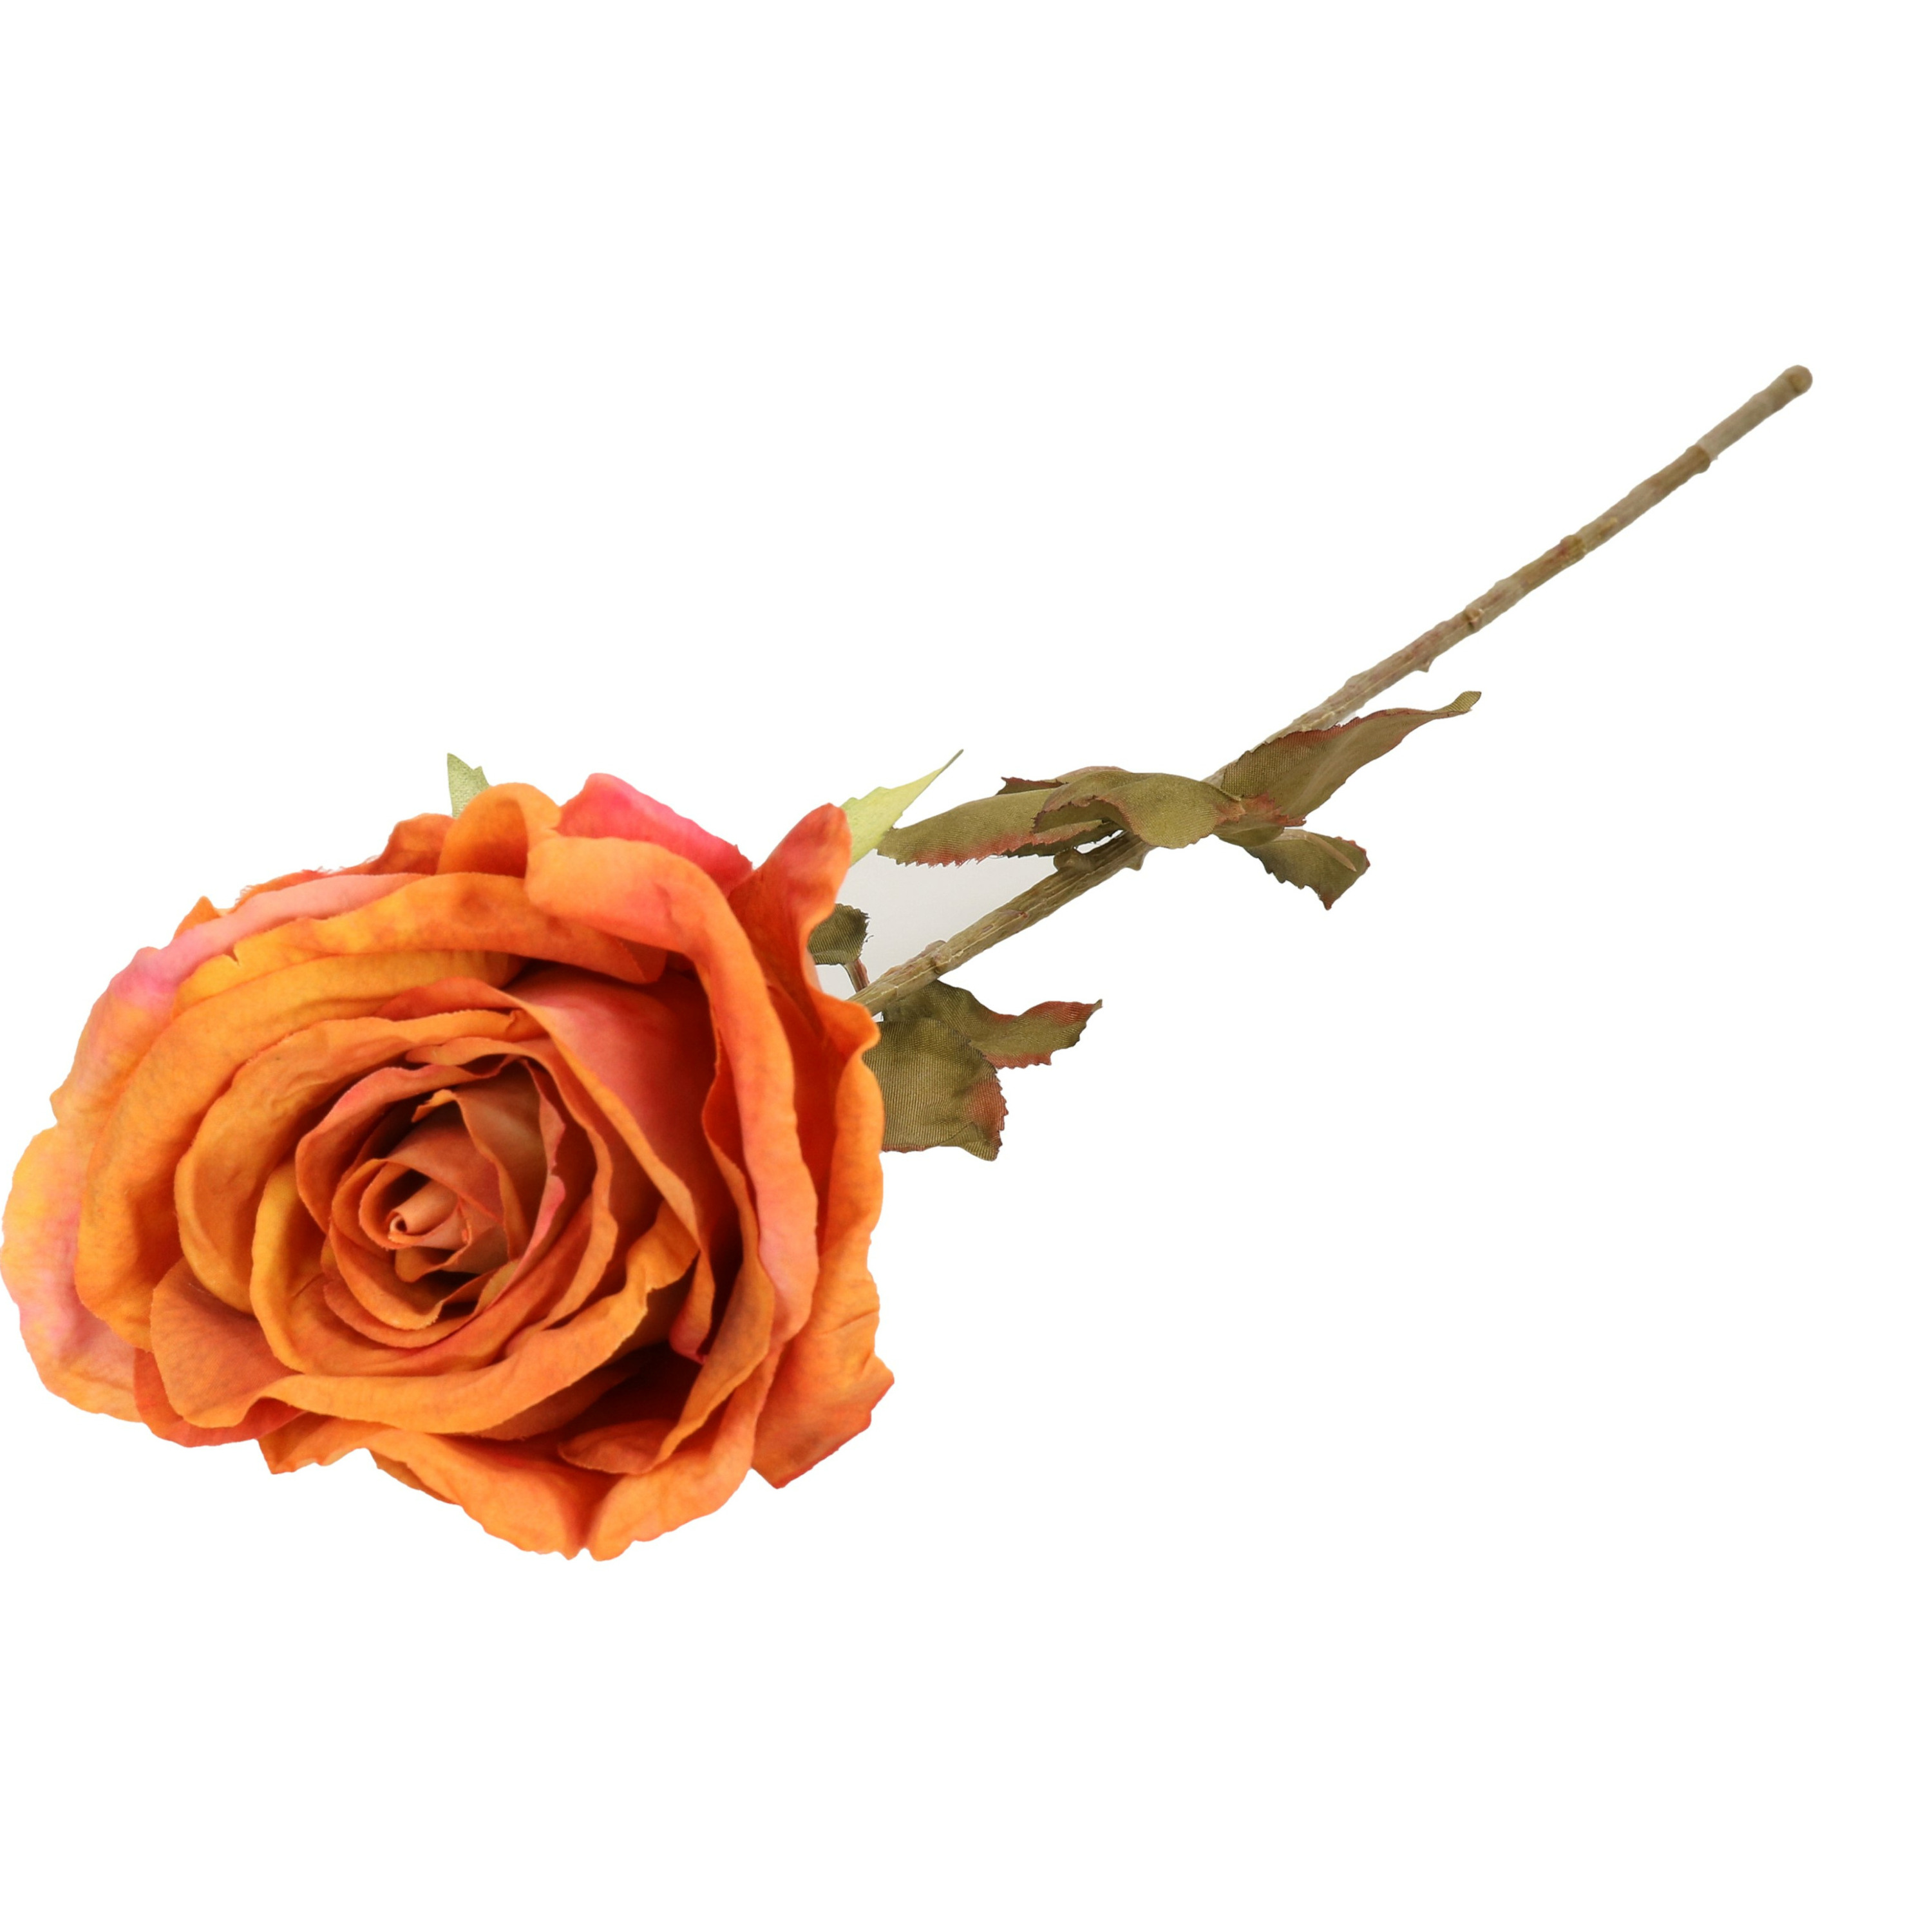 Top Art Kunstbloem roos Calista oranje 66 cm kunststof steel decoratie bloemen